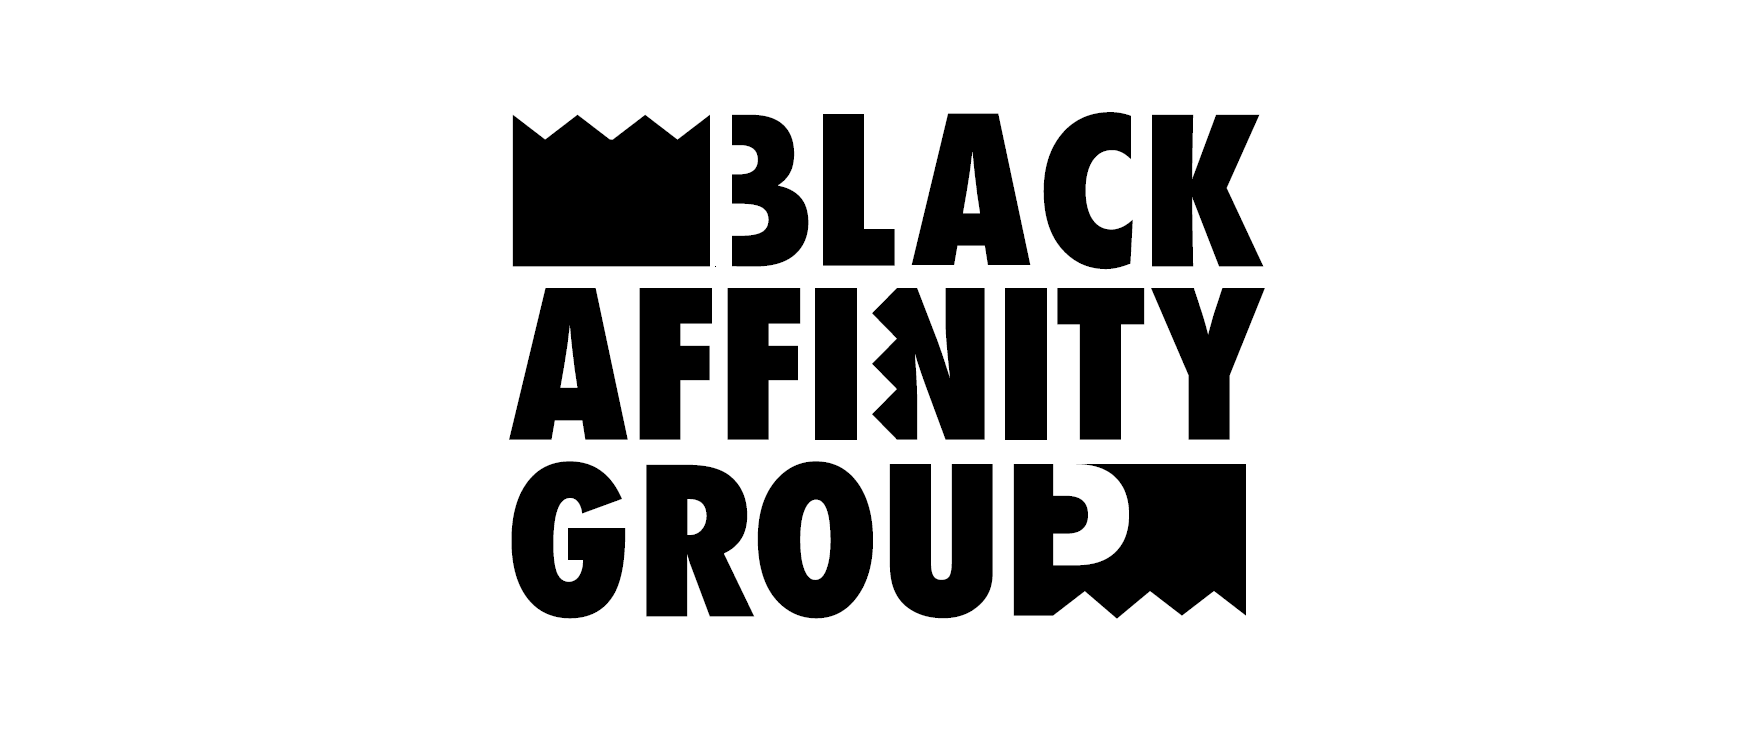 UTEP Black Affinity Group 